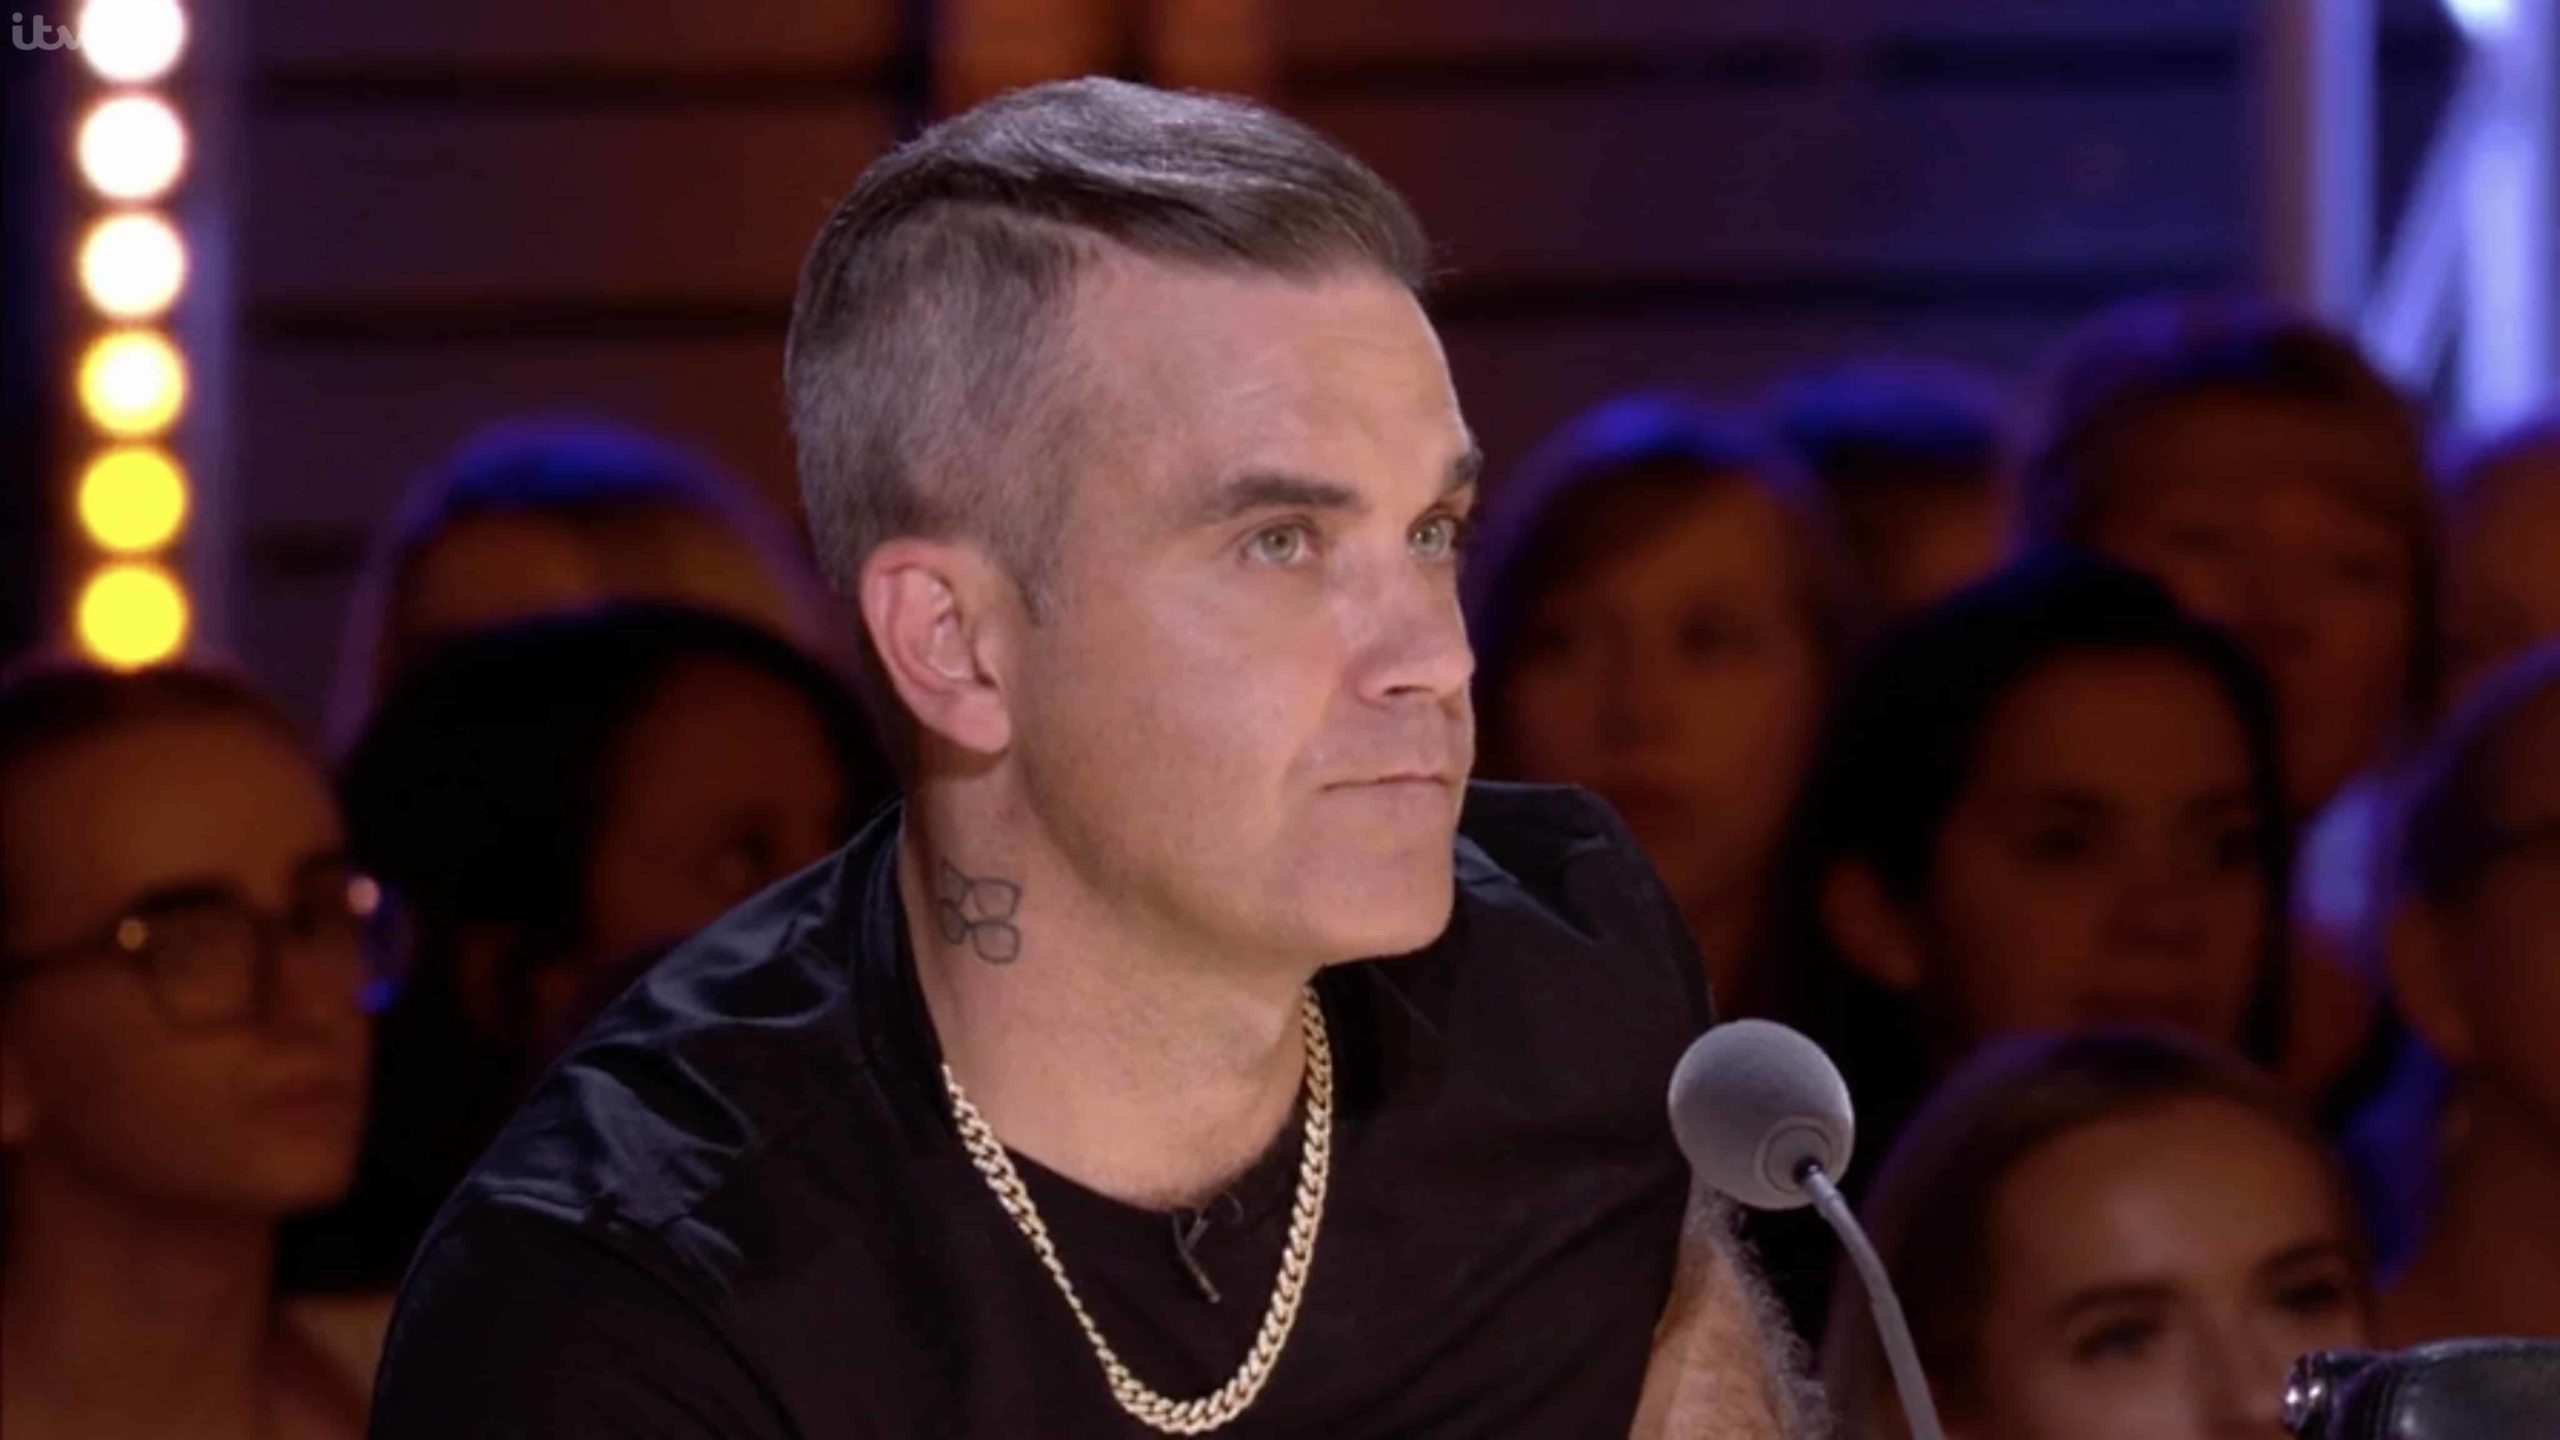 Quem viverá o cantor? Robbie Williams terá cinebiografia “fantástica”